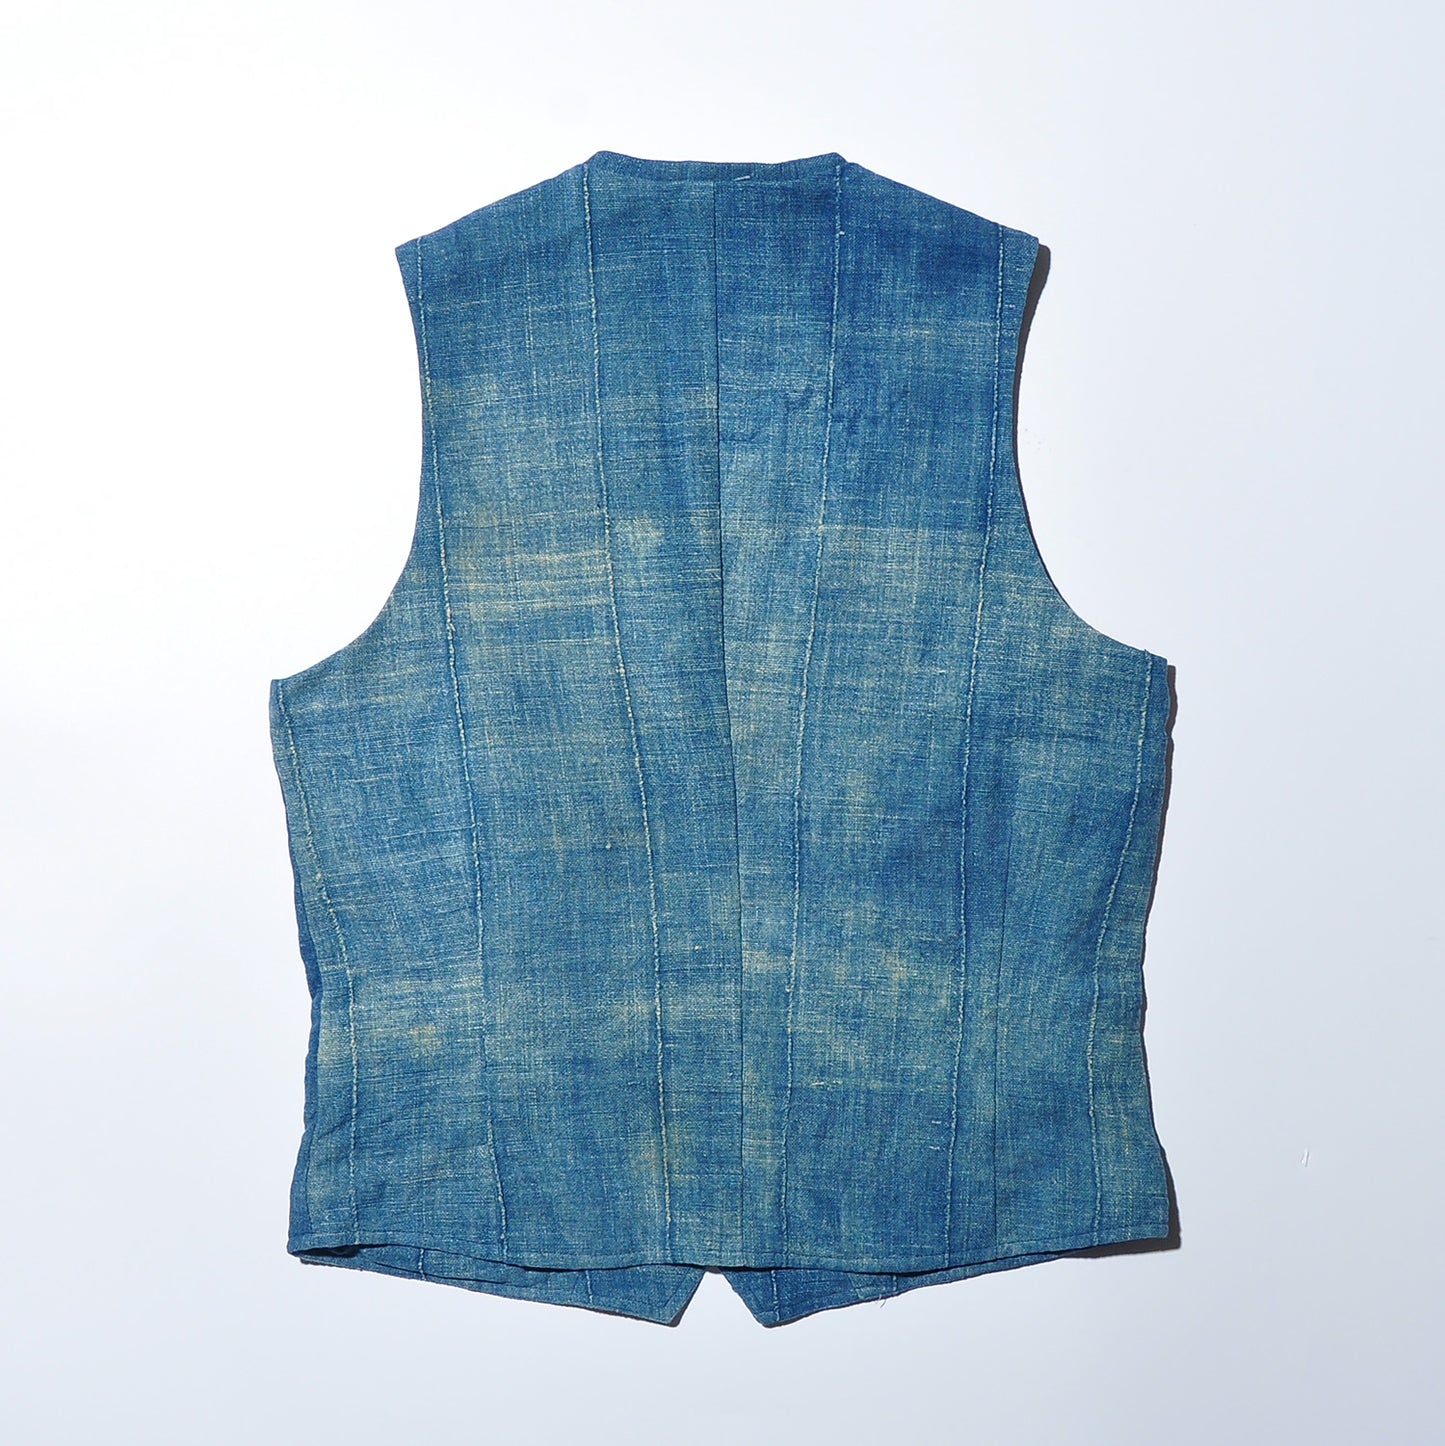 GAIJIN MADE GVE-127 Antique Indigo Vest